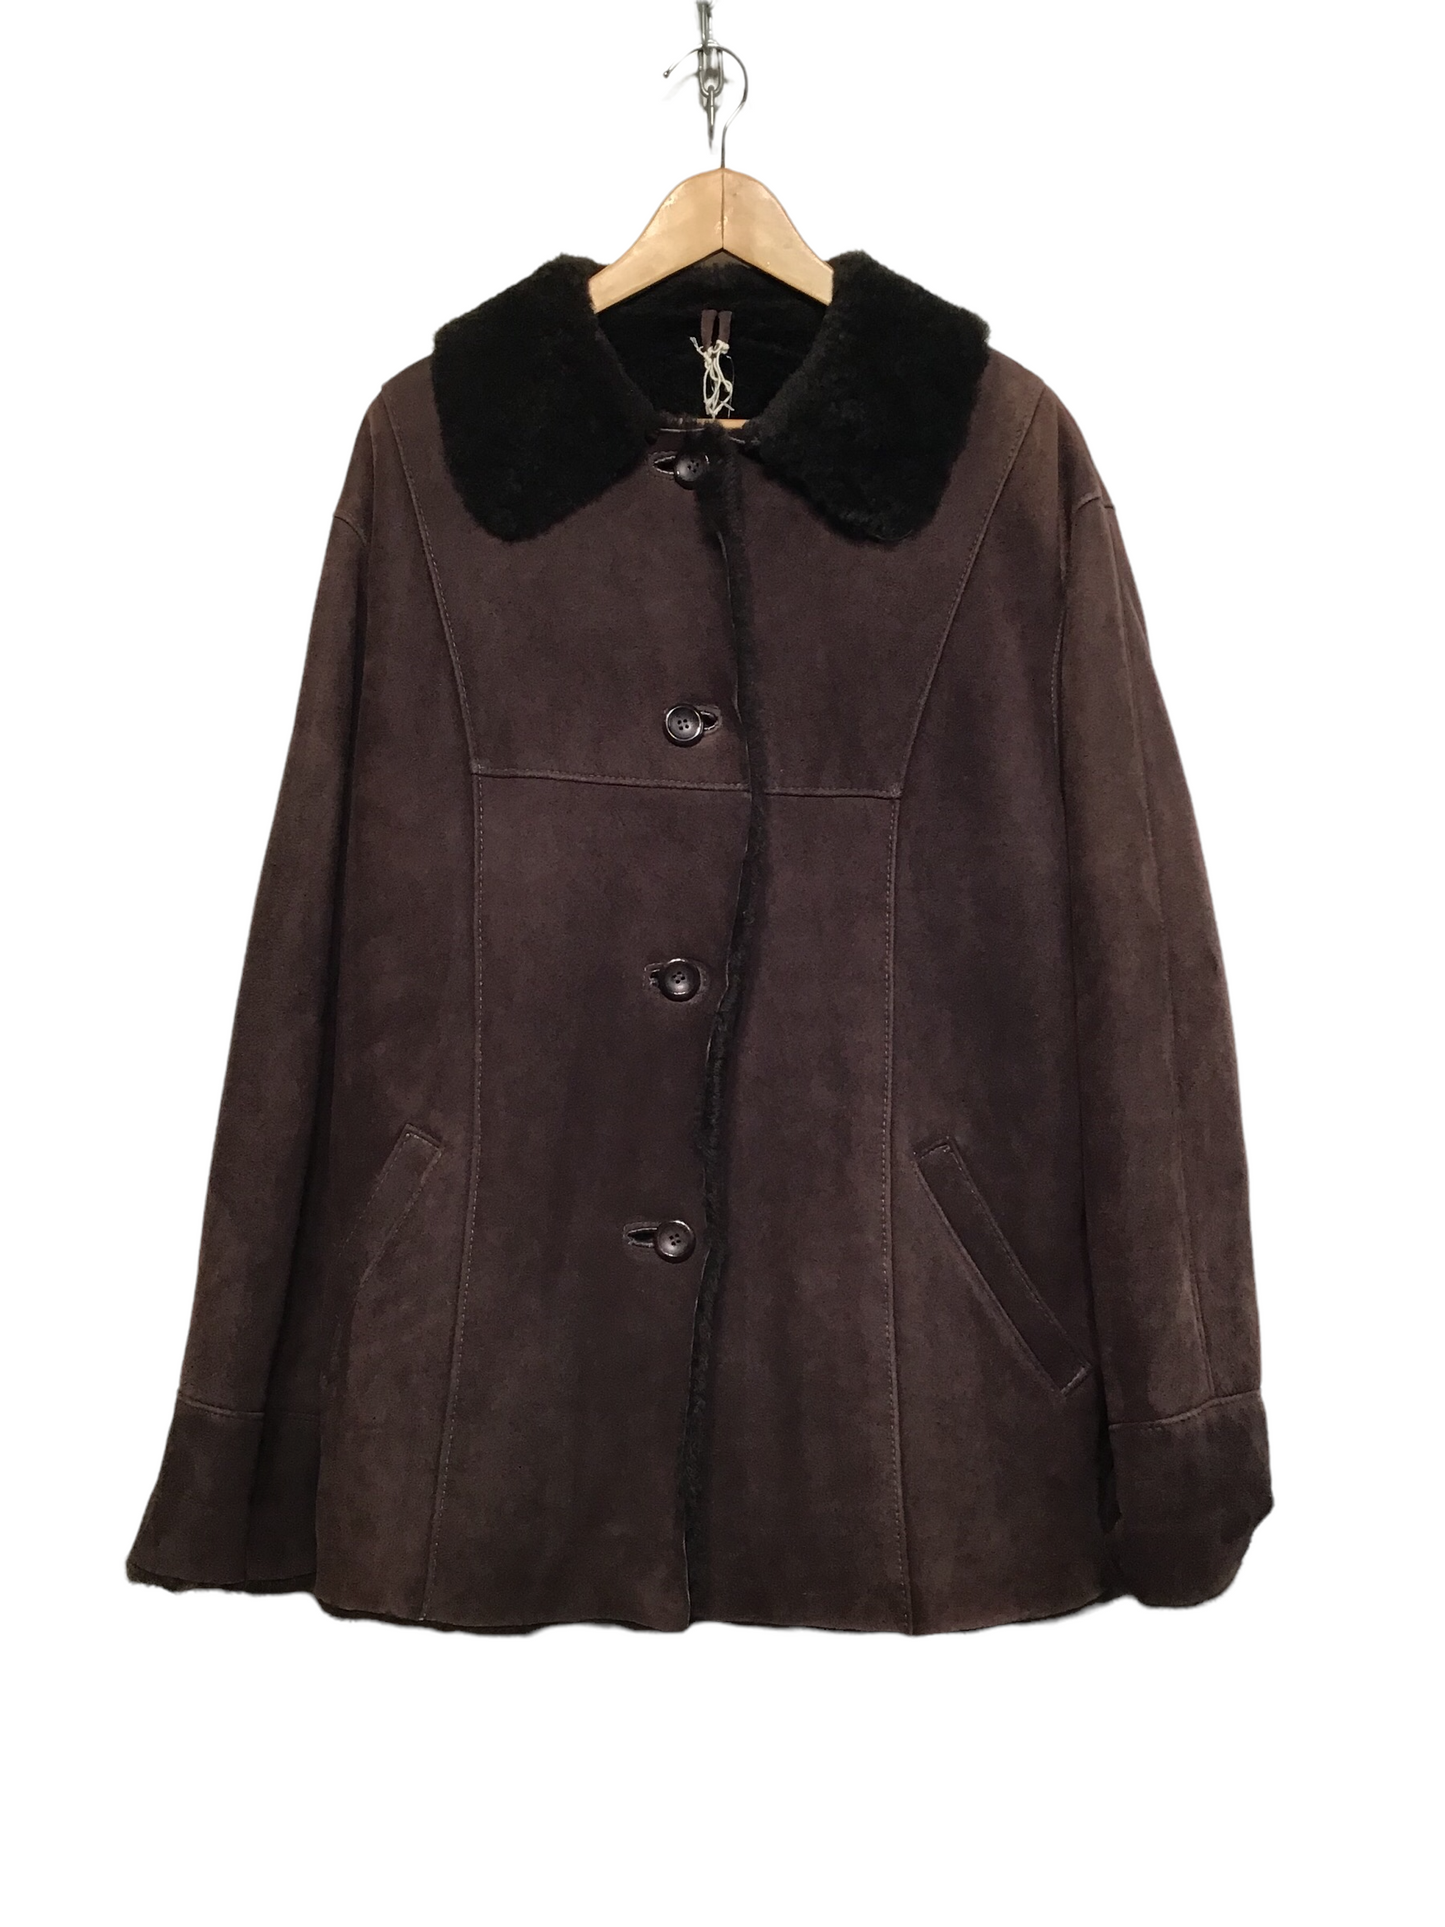 Dark Brown Shearling Coat (Size L)